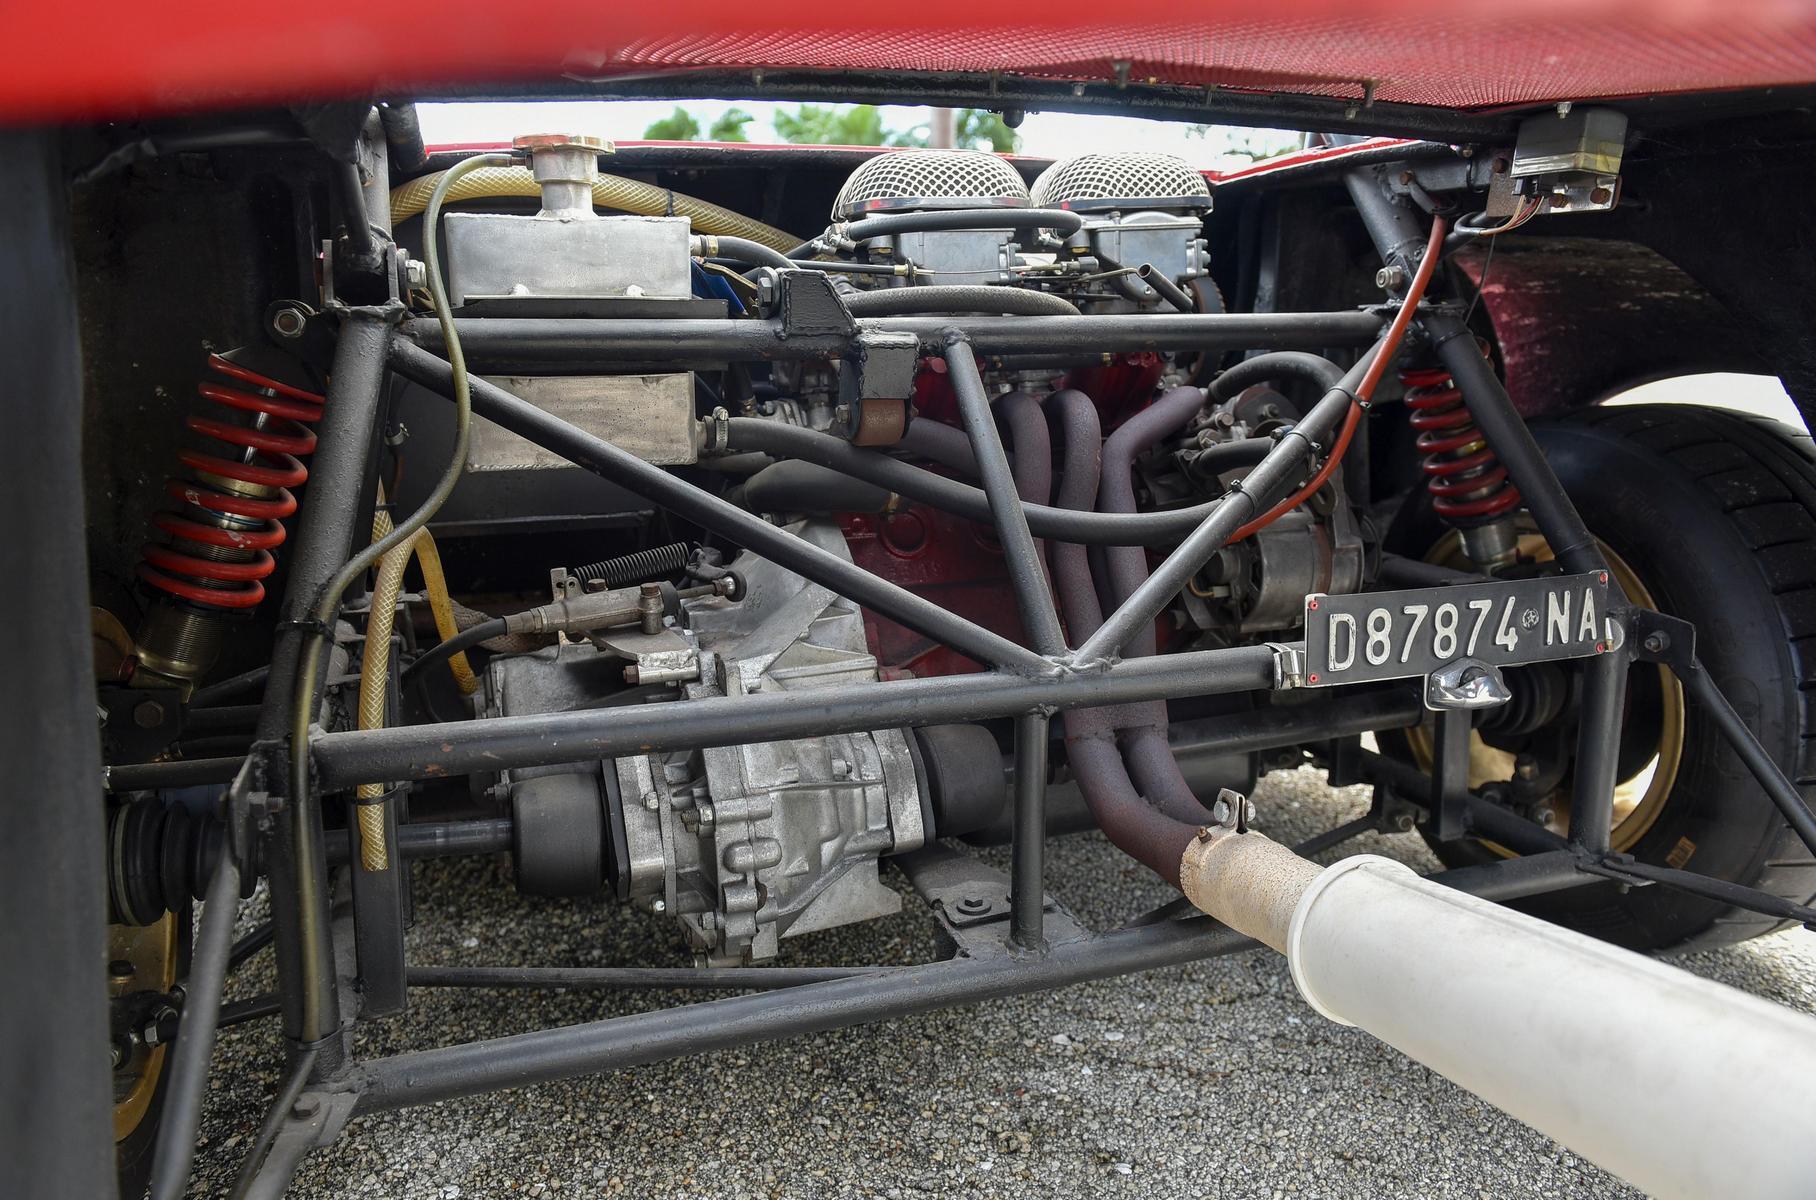 Баркетта собрана вокруг пространственной рамы из труб, перед задней осью поперечно установлен силовой агрегат от Fiat 128 в сборе